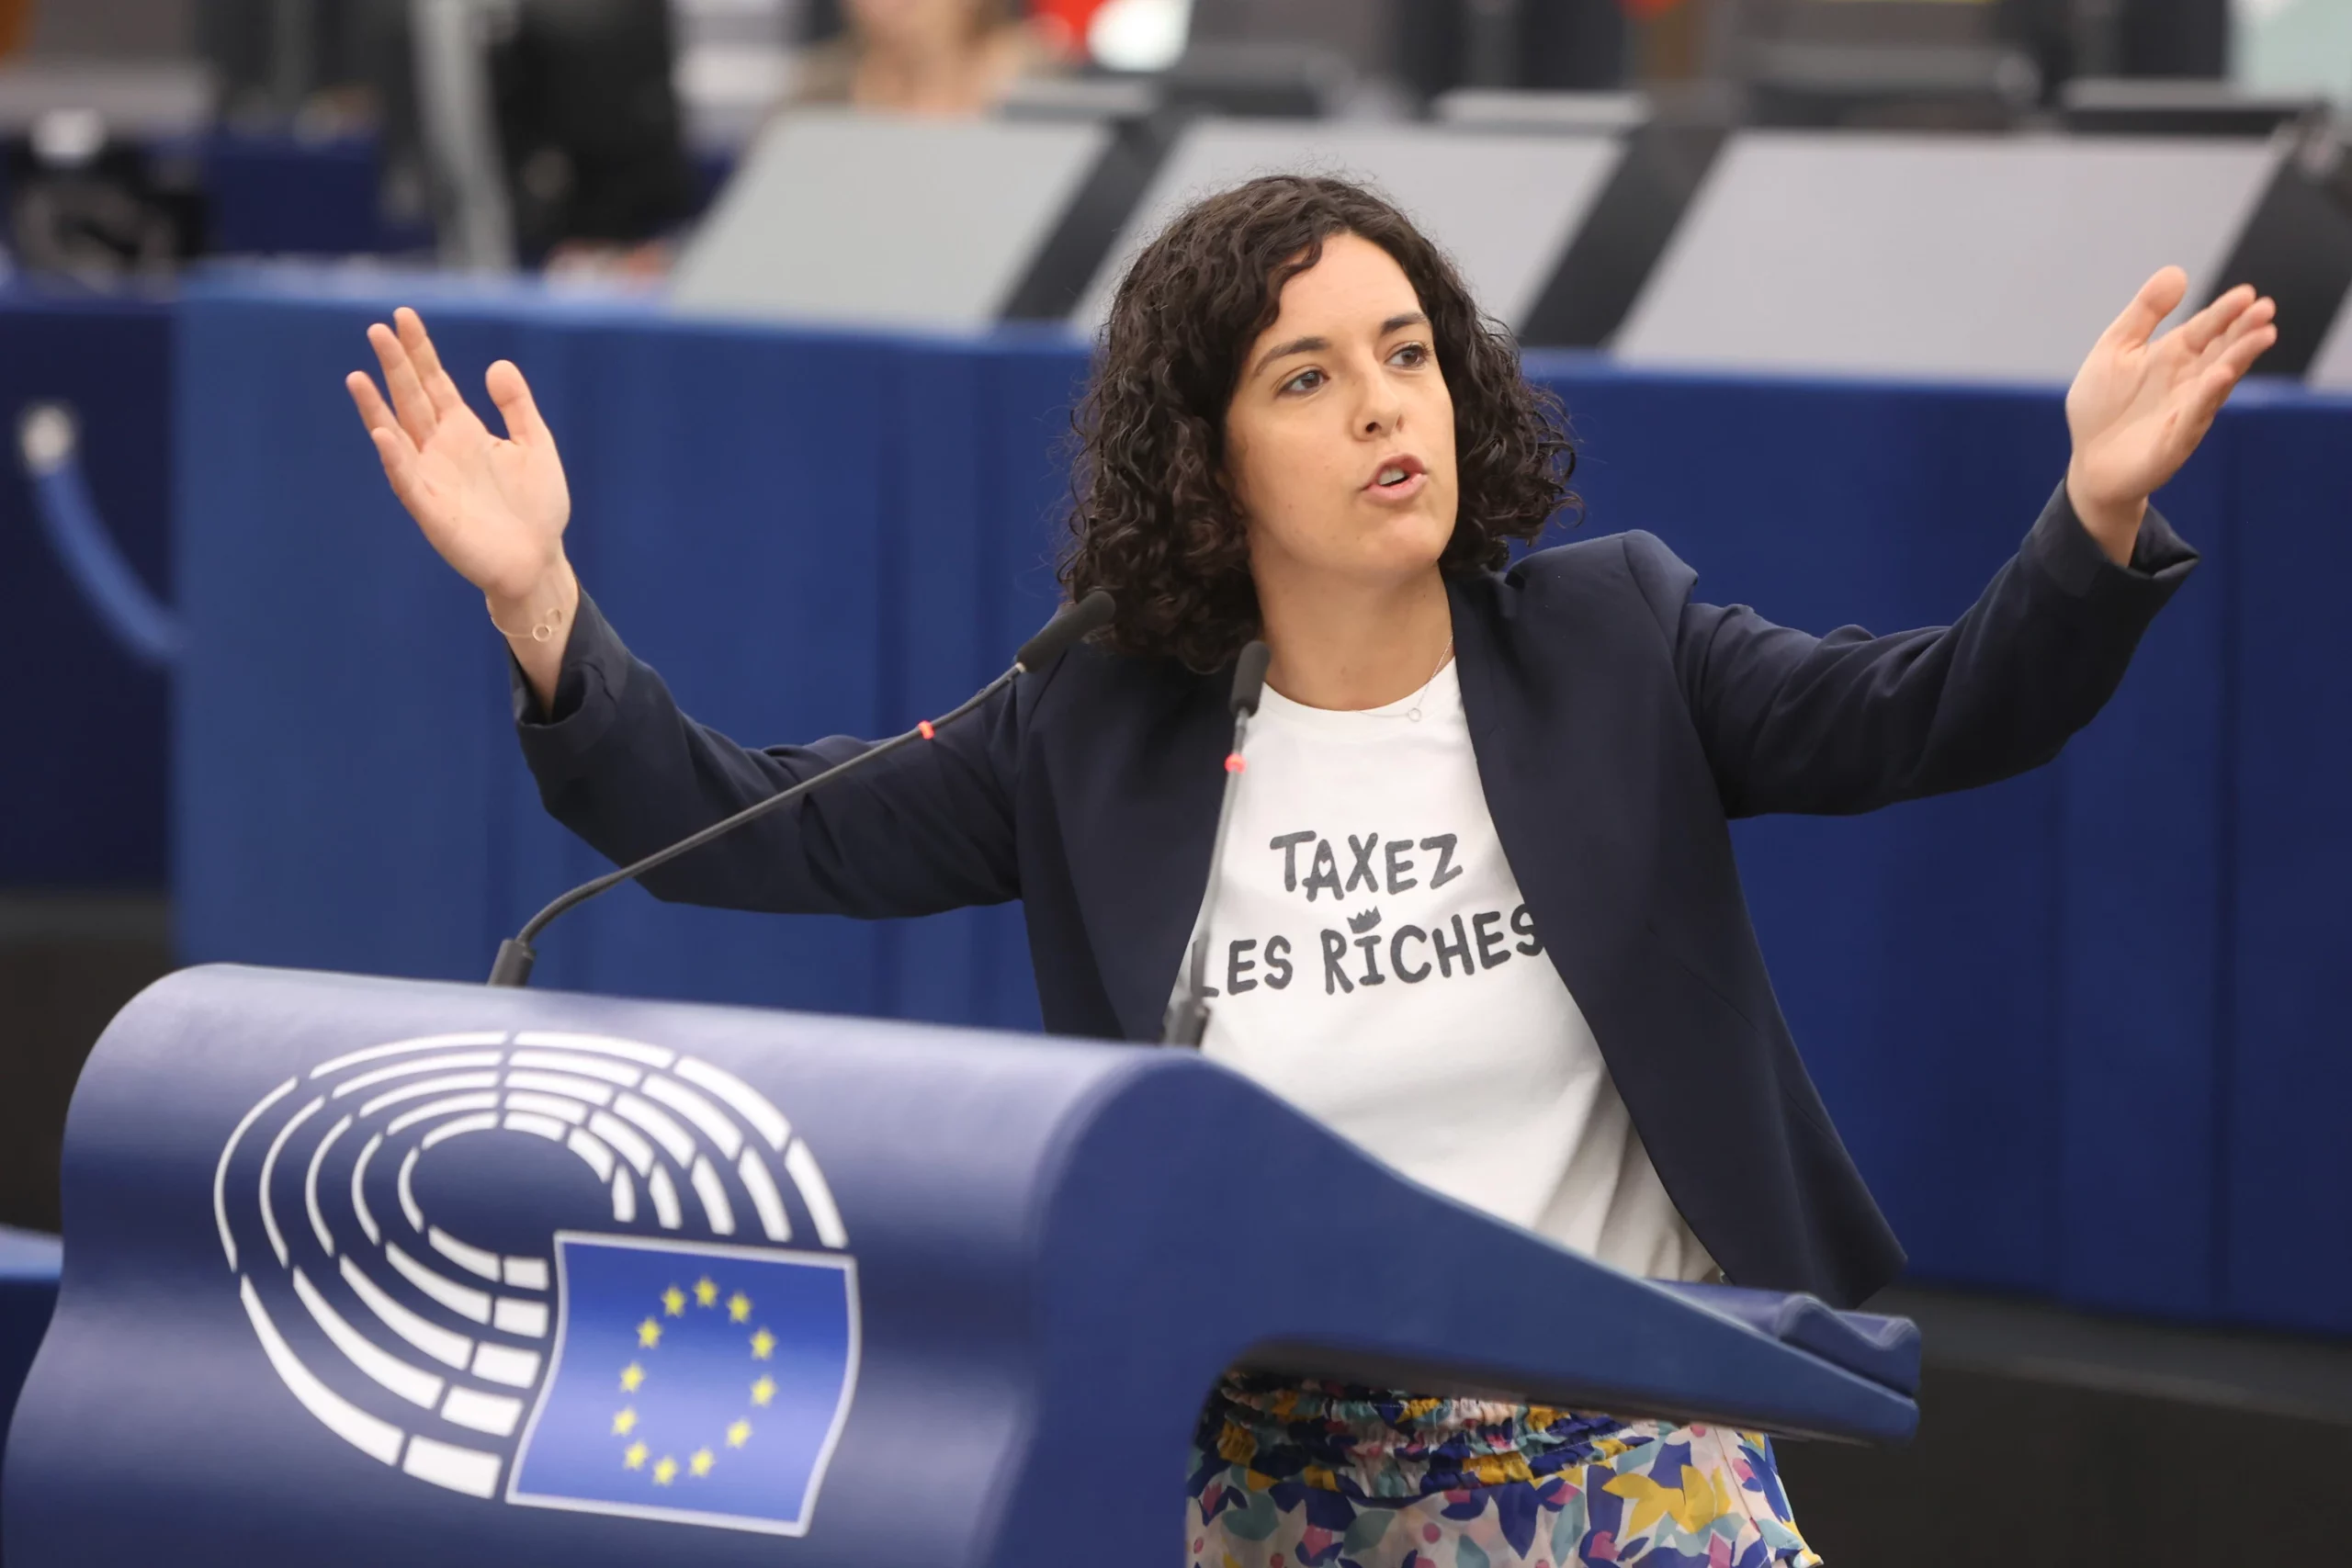 La Sinistra europea voterà contro Ursula con der Leyen: "I cittadini sono stanchi di questi accordi clandestini"